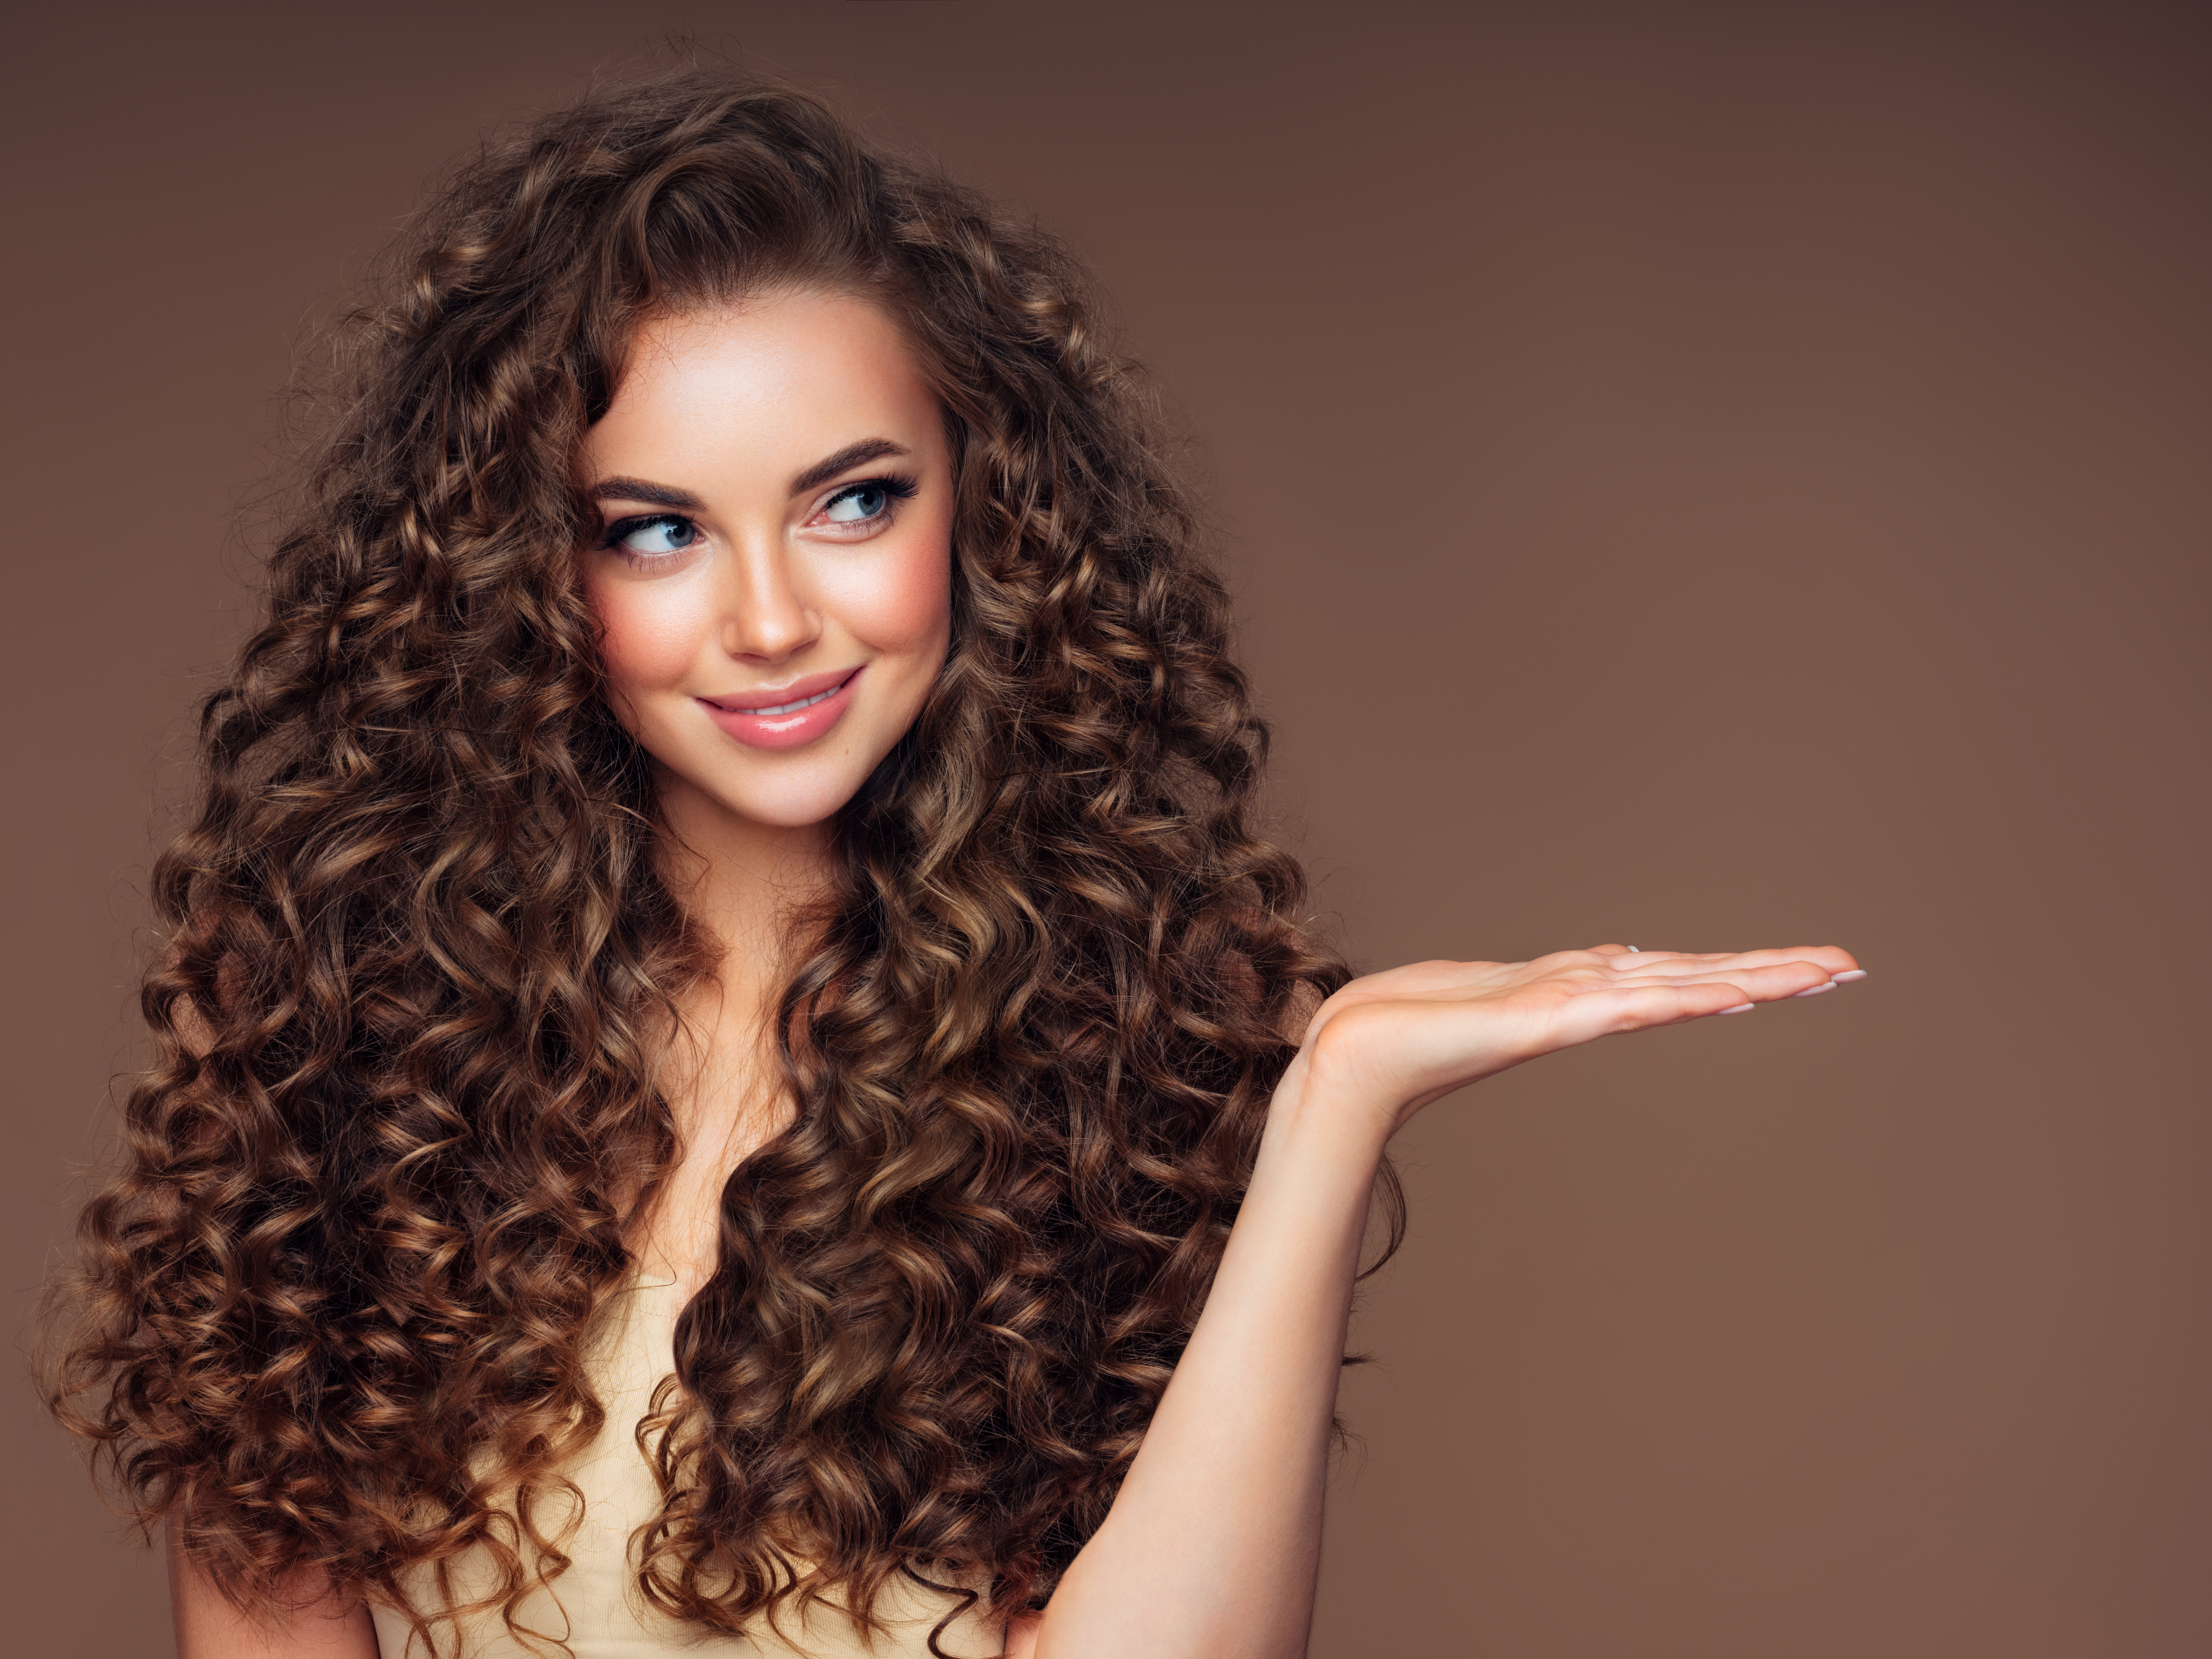 Cuidado del cabello: ¿cómo definir los rizos de manera